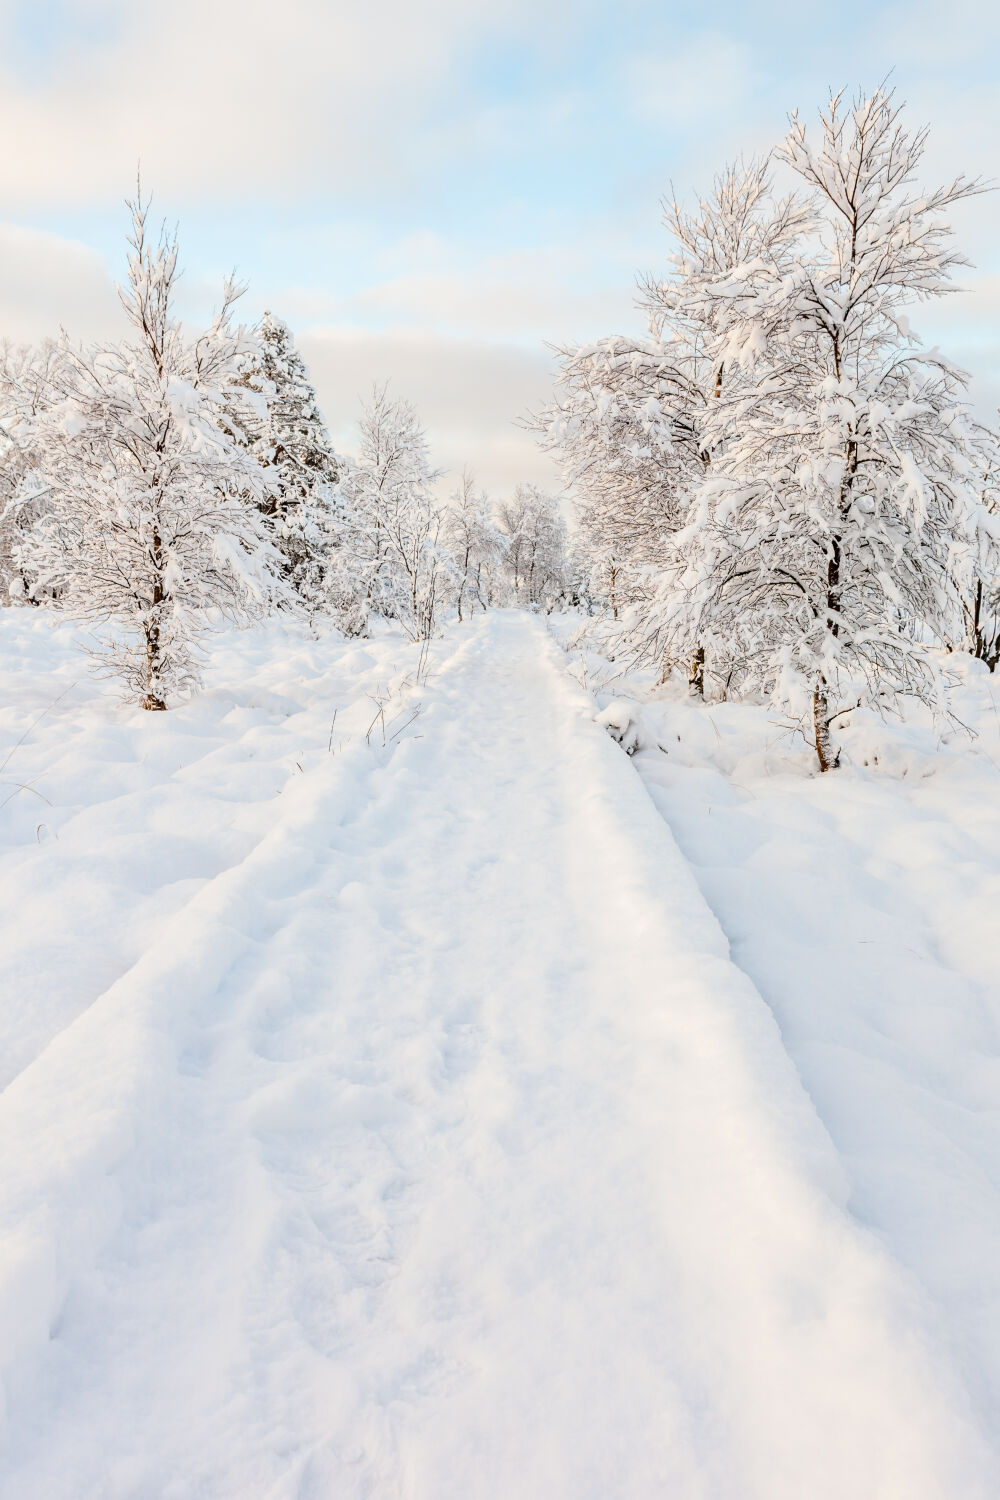 voetweg door de sneeuw